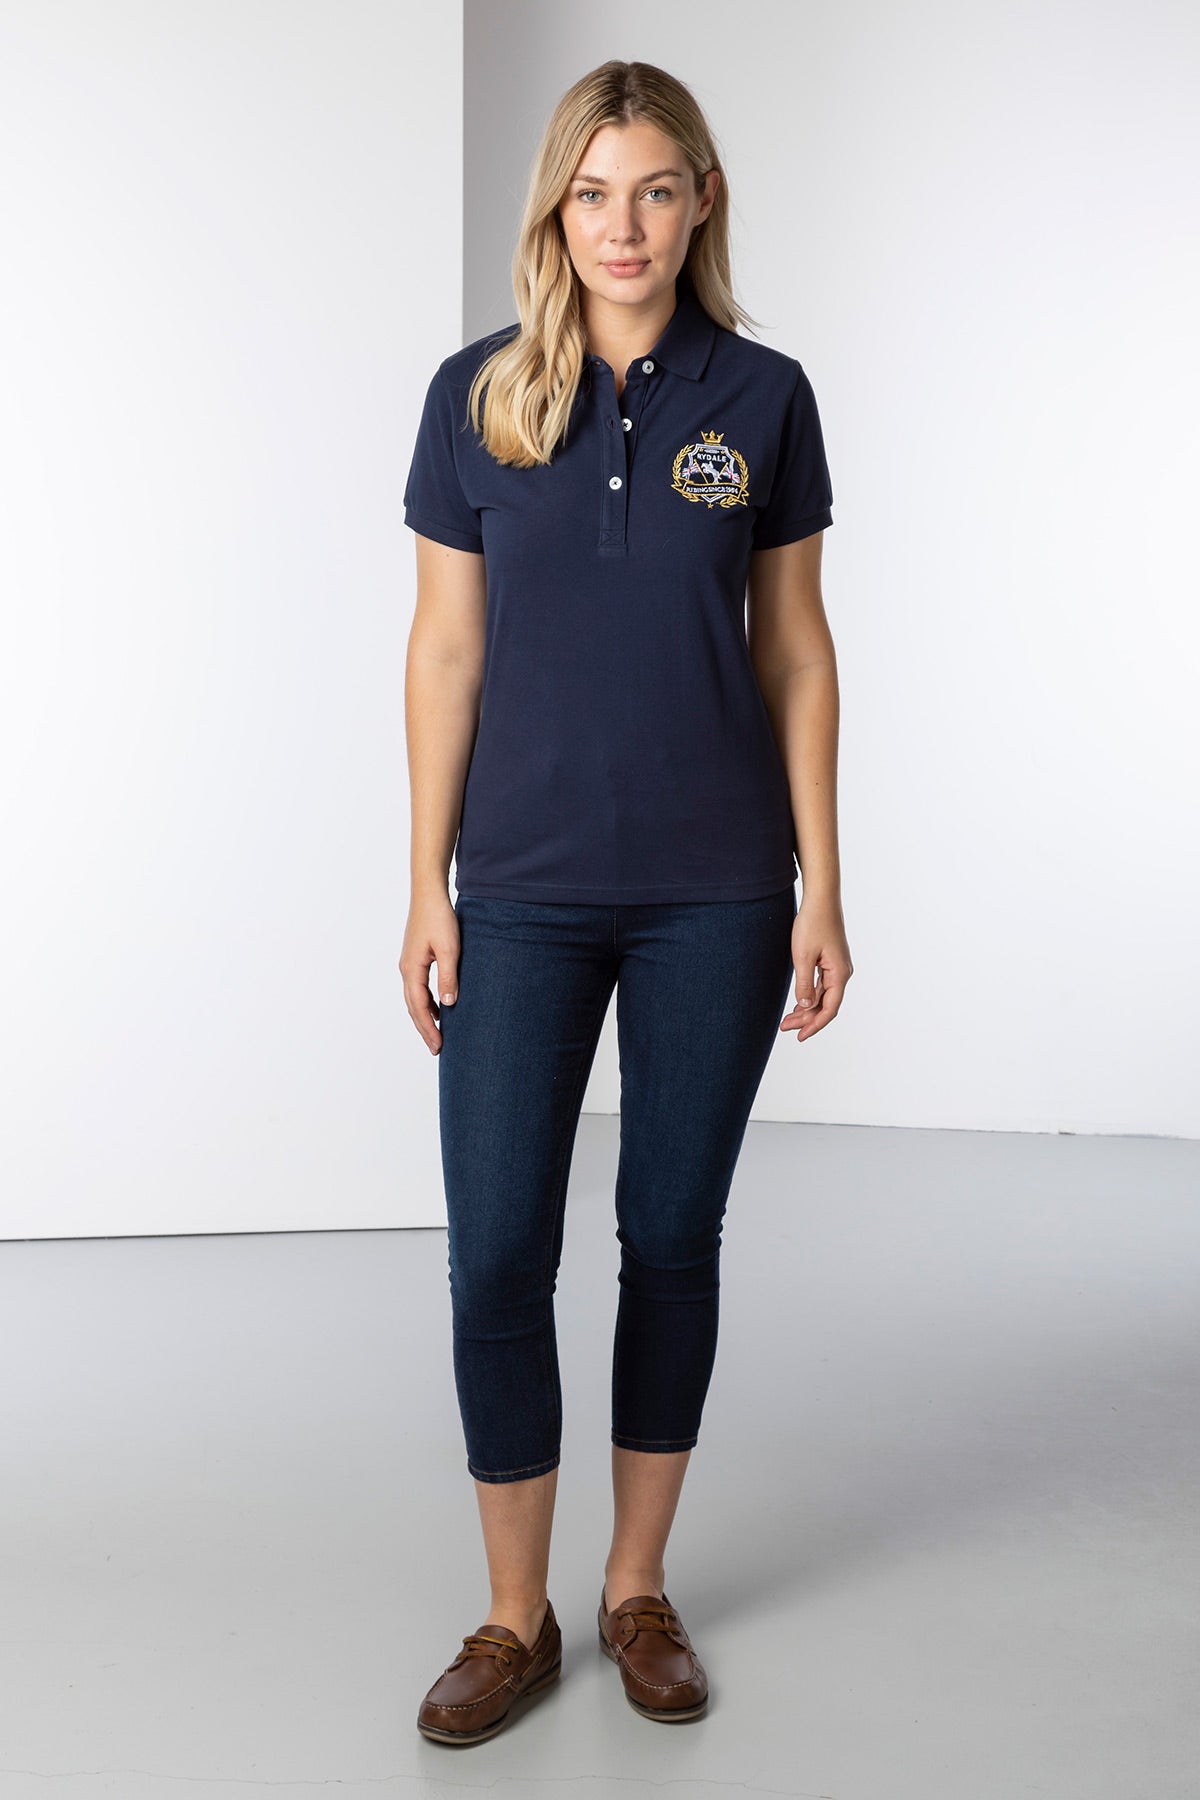 Ladies Emblem Polo Shirt UK | Rydale